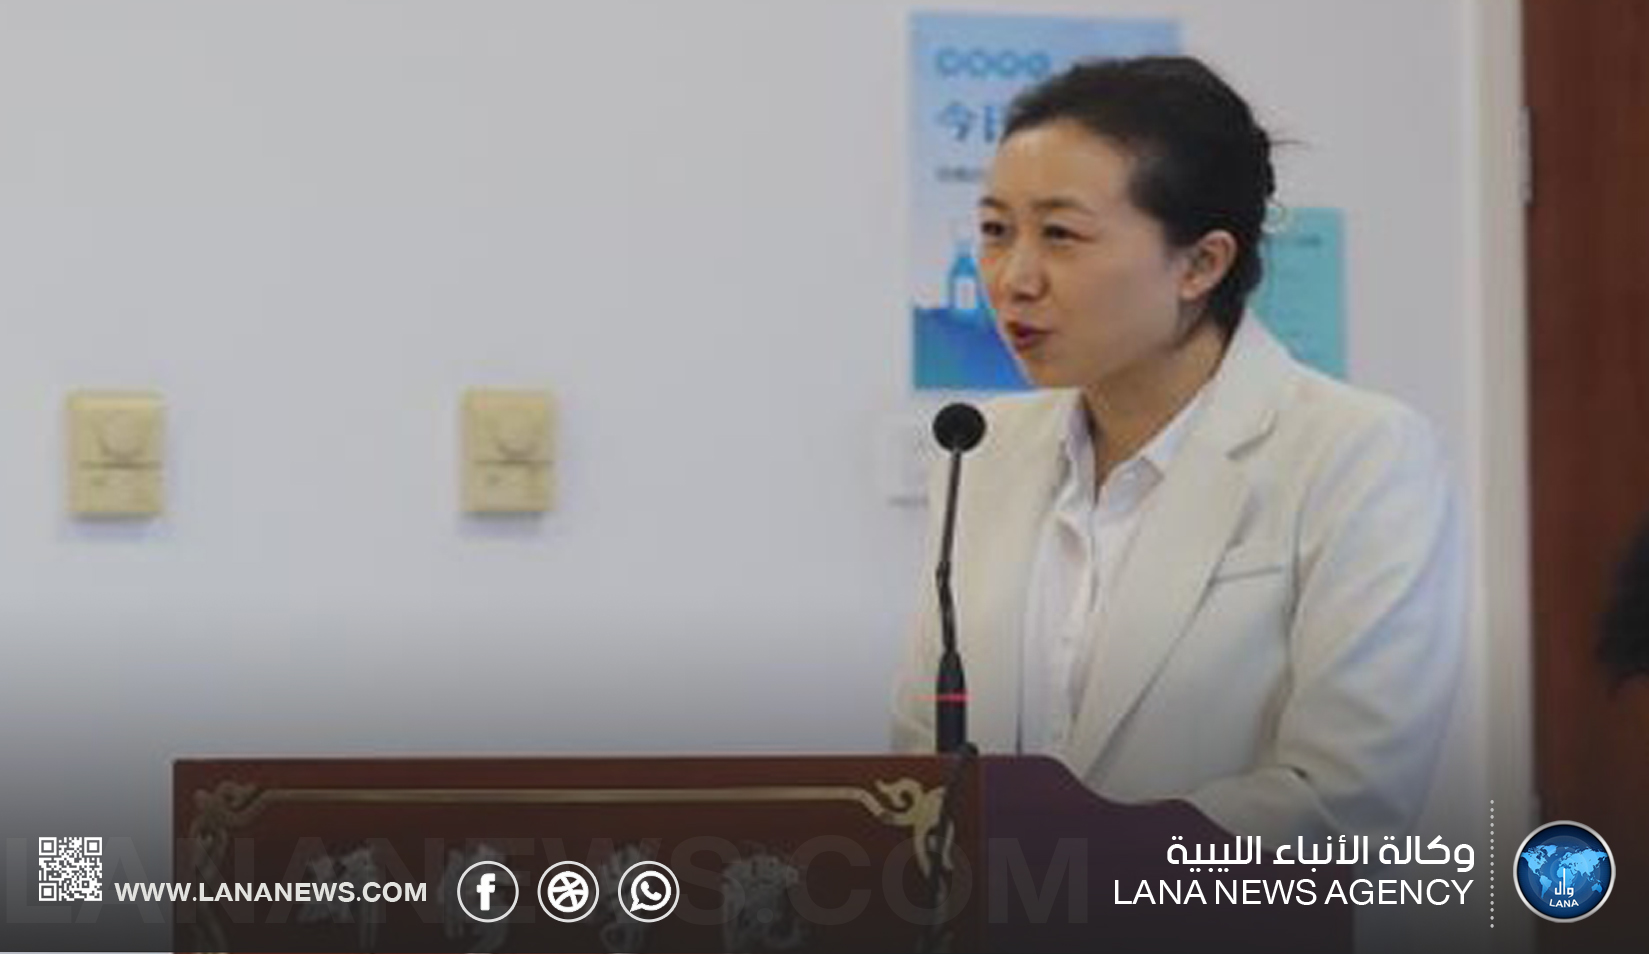 مسؤولة في هيئة الإذاعة الصينية لـ(الأنباء الليبية): علاقاتنا مع ليبيا راسخة ونحن حريصون على دعم سيادتها واستقلالها.